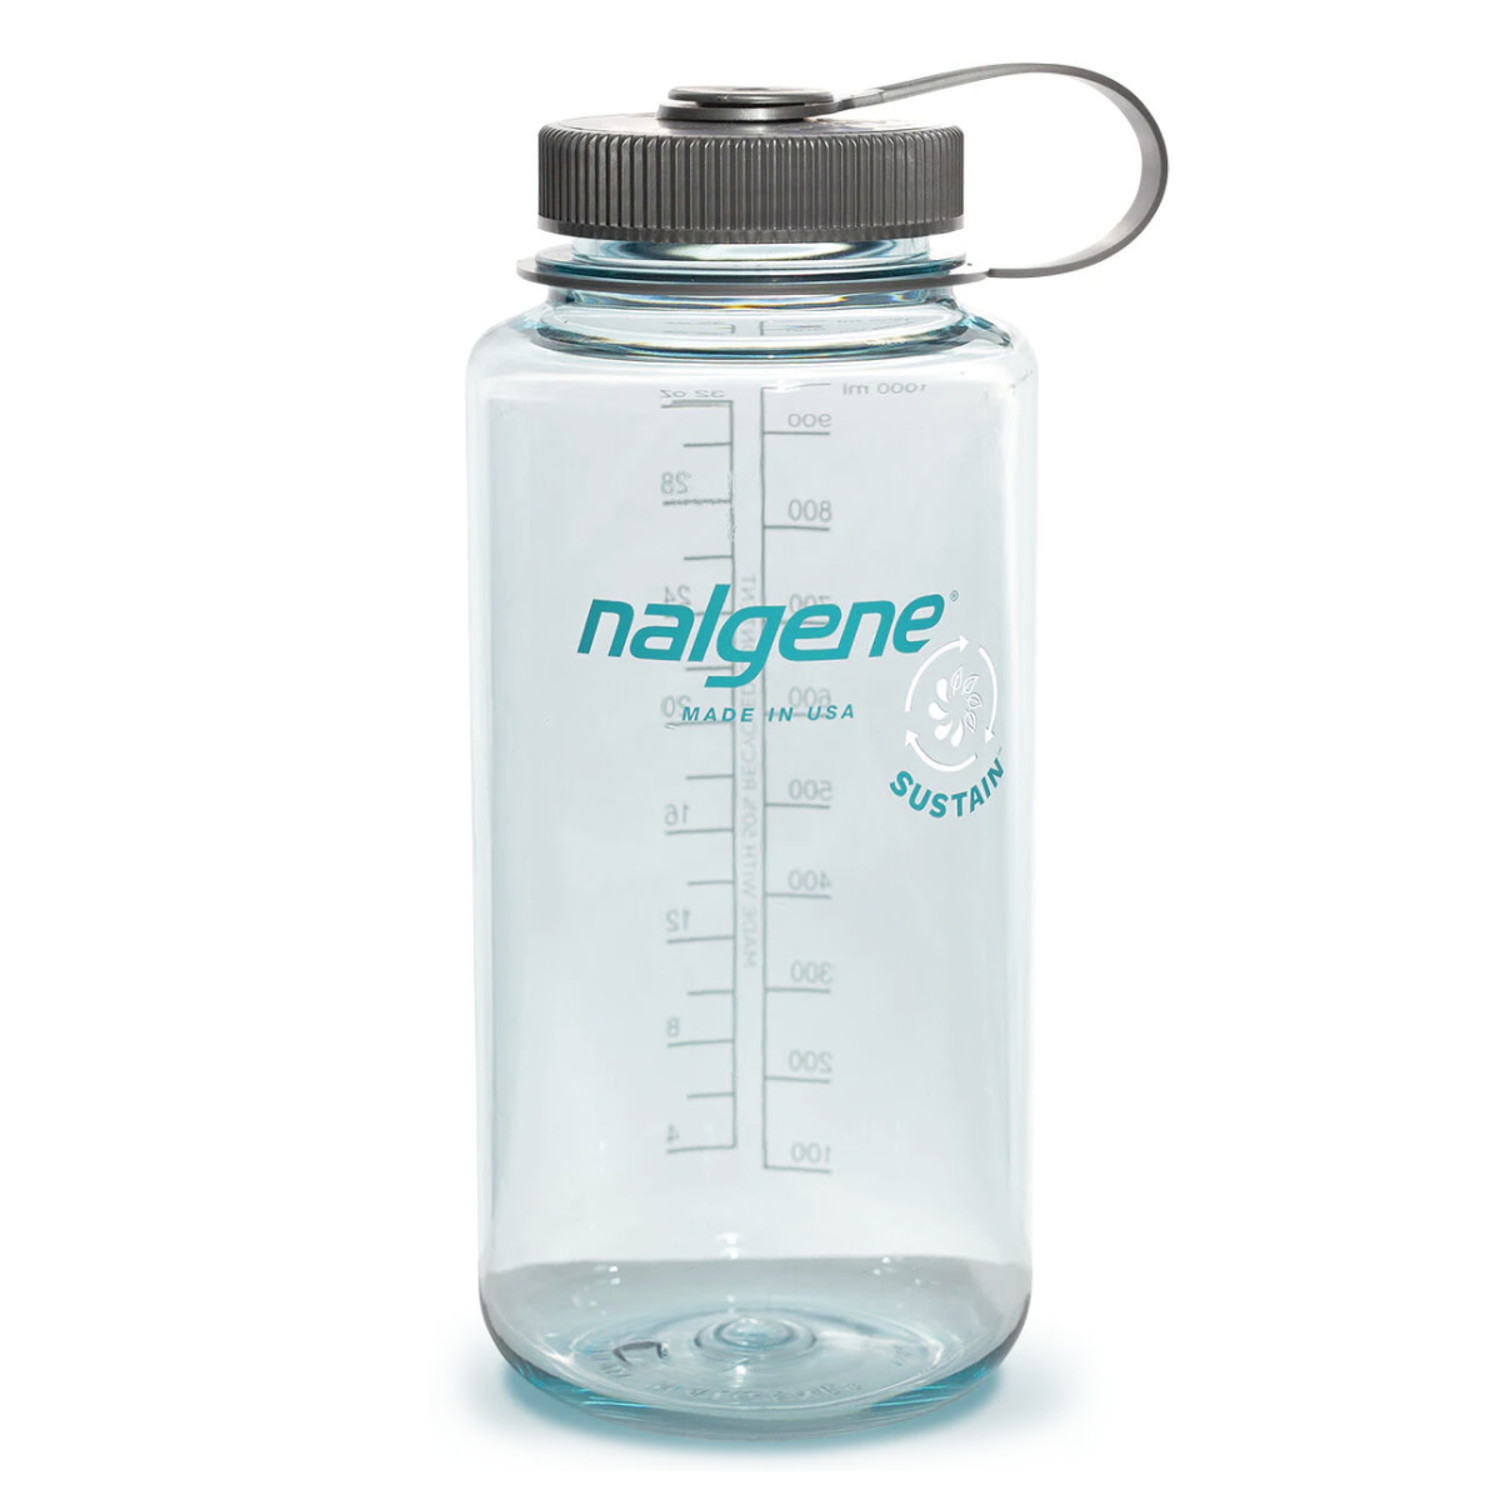 Surfer 32oz Wide Mouth Sustain Water Bottle - Nalgene